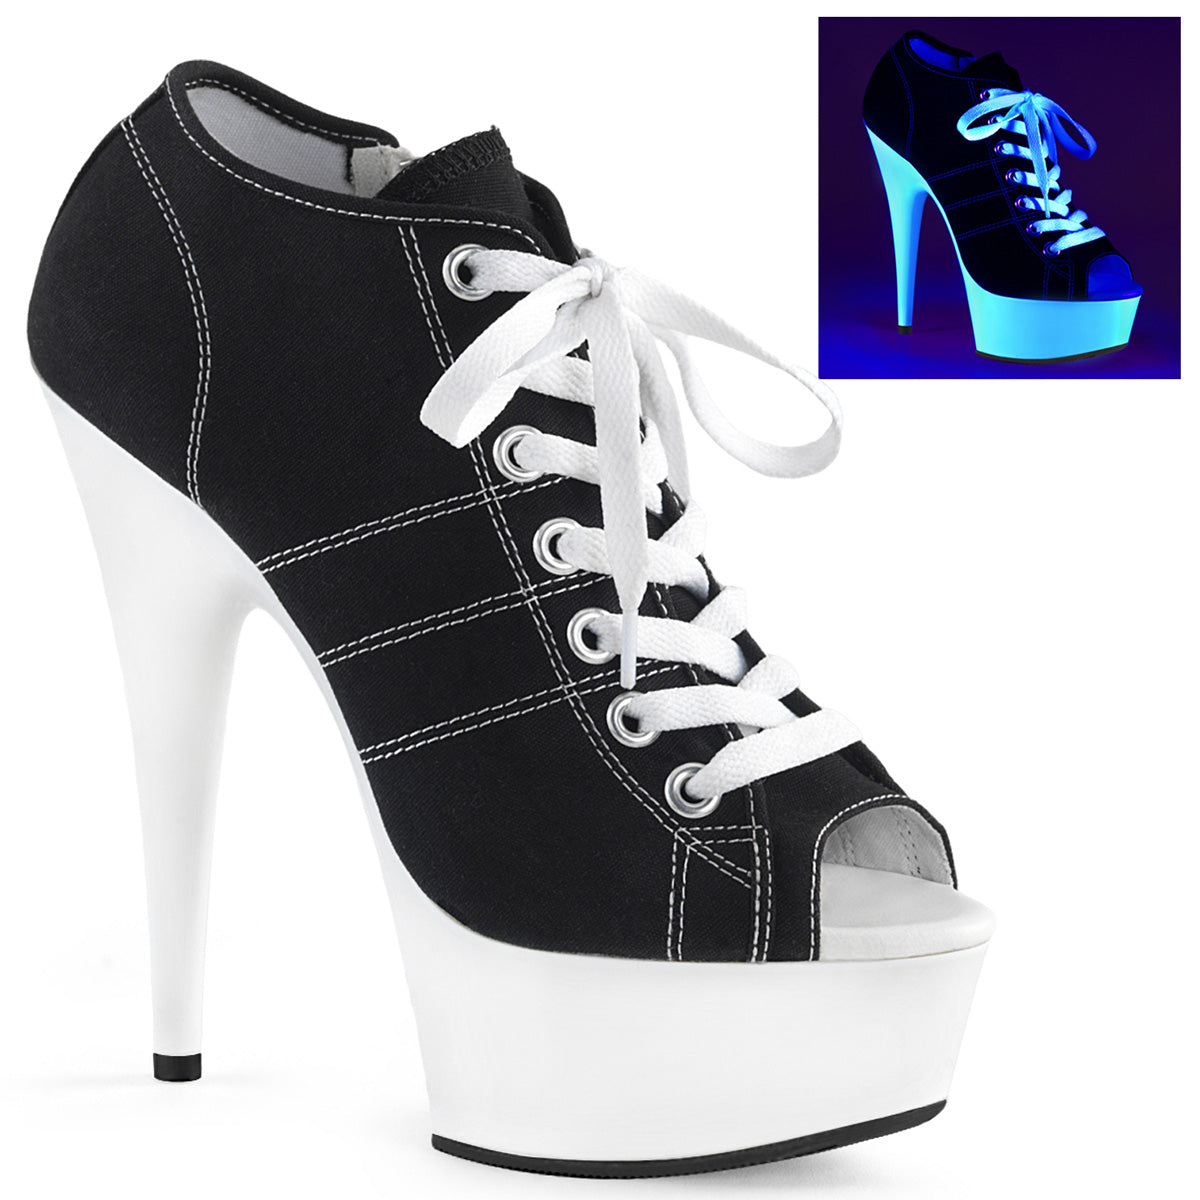 DELIGHT-600SK-01 Black & White Ankle Peep Toe High Heel